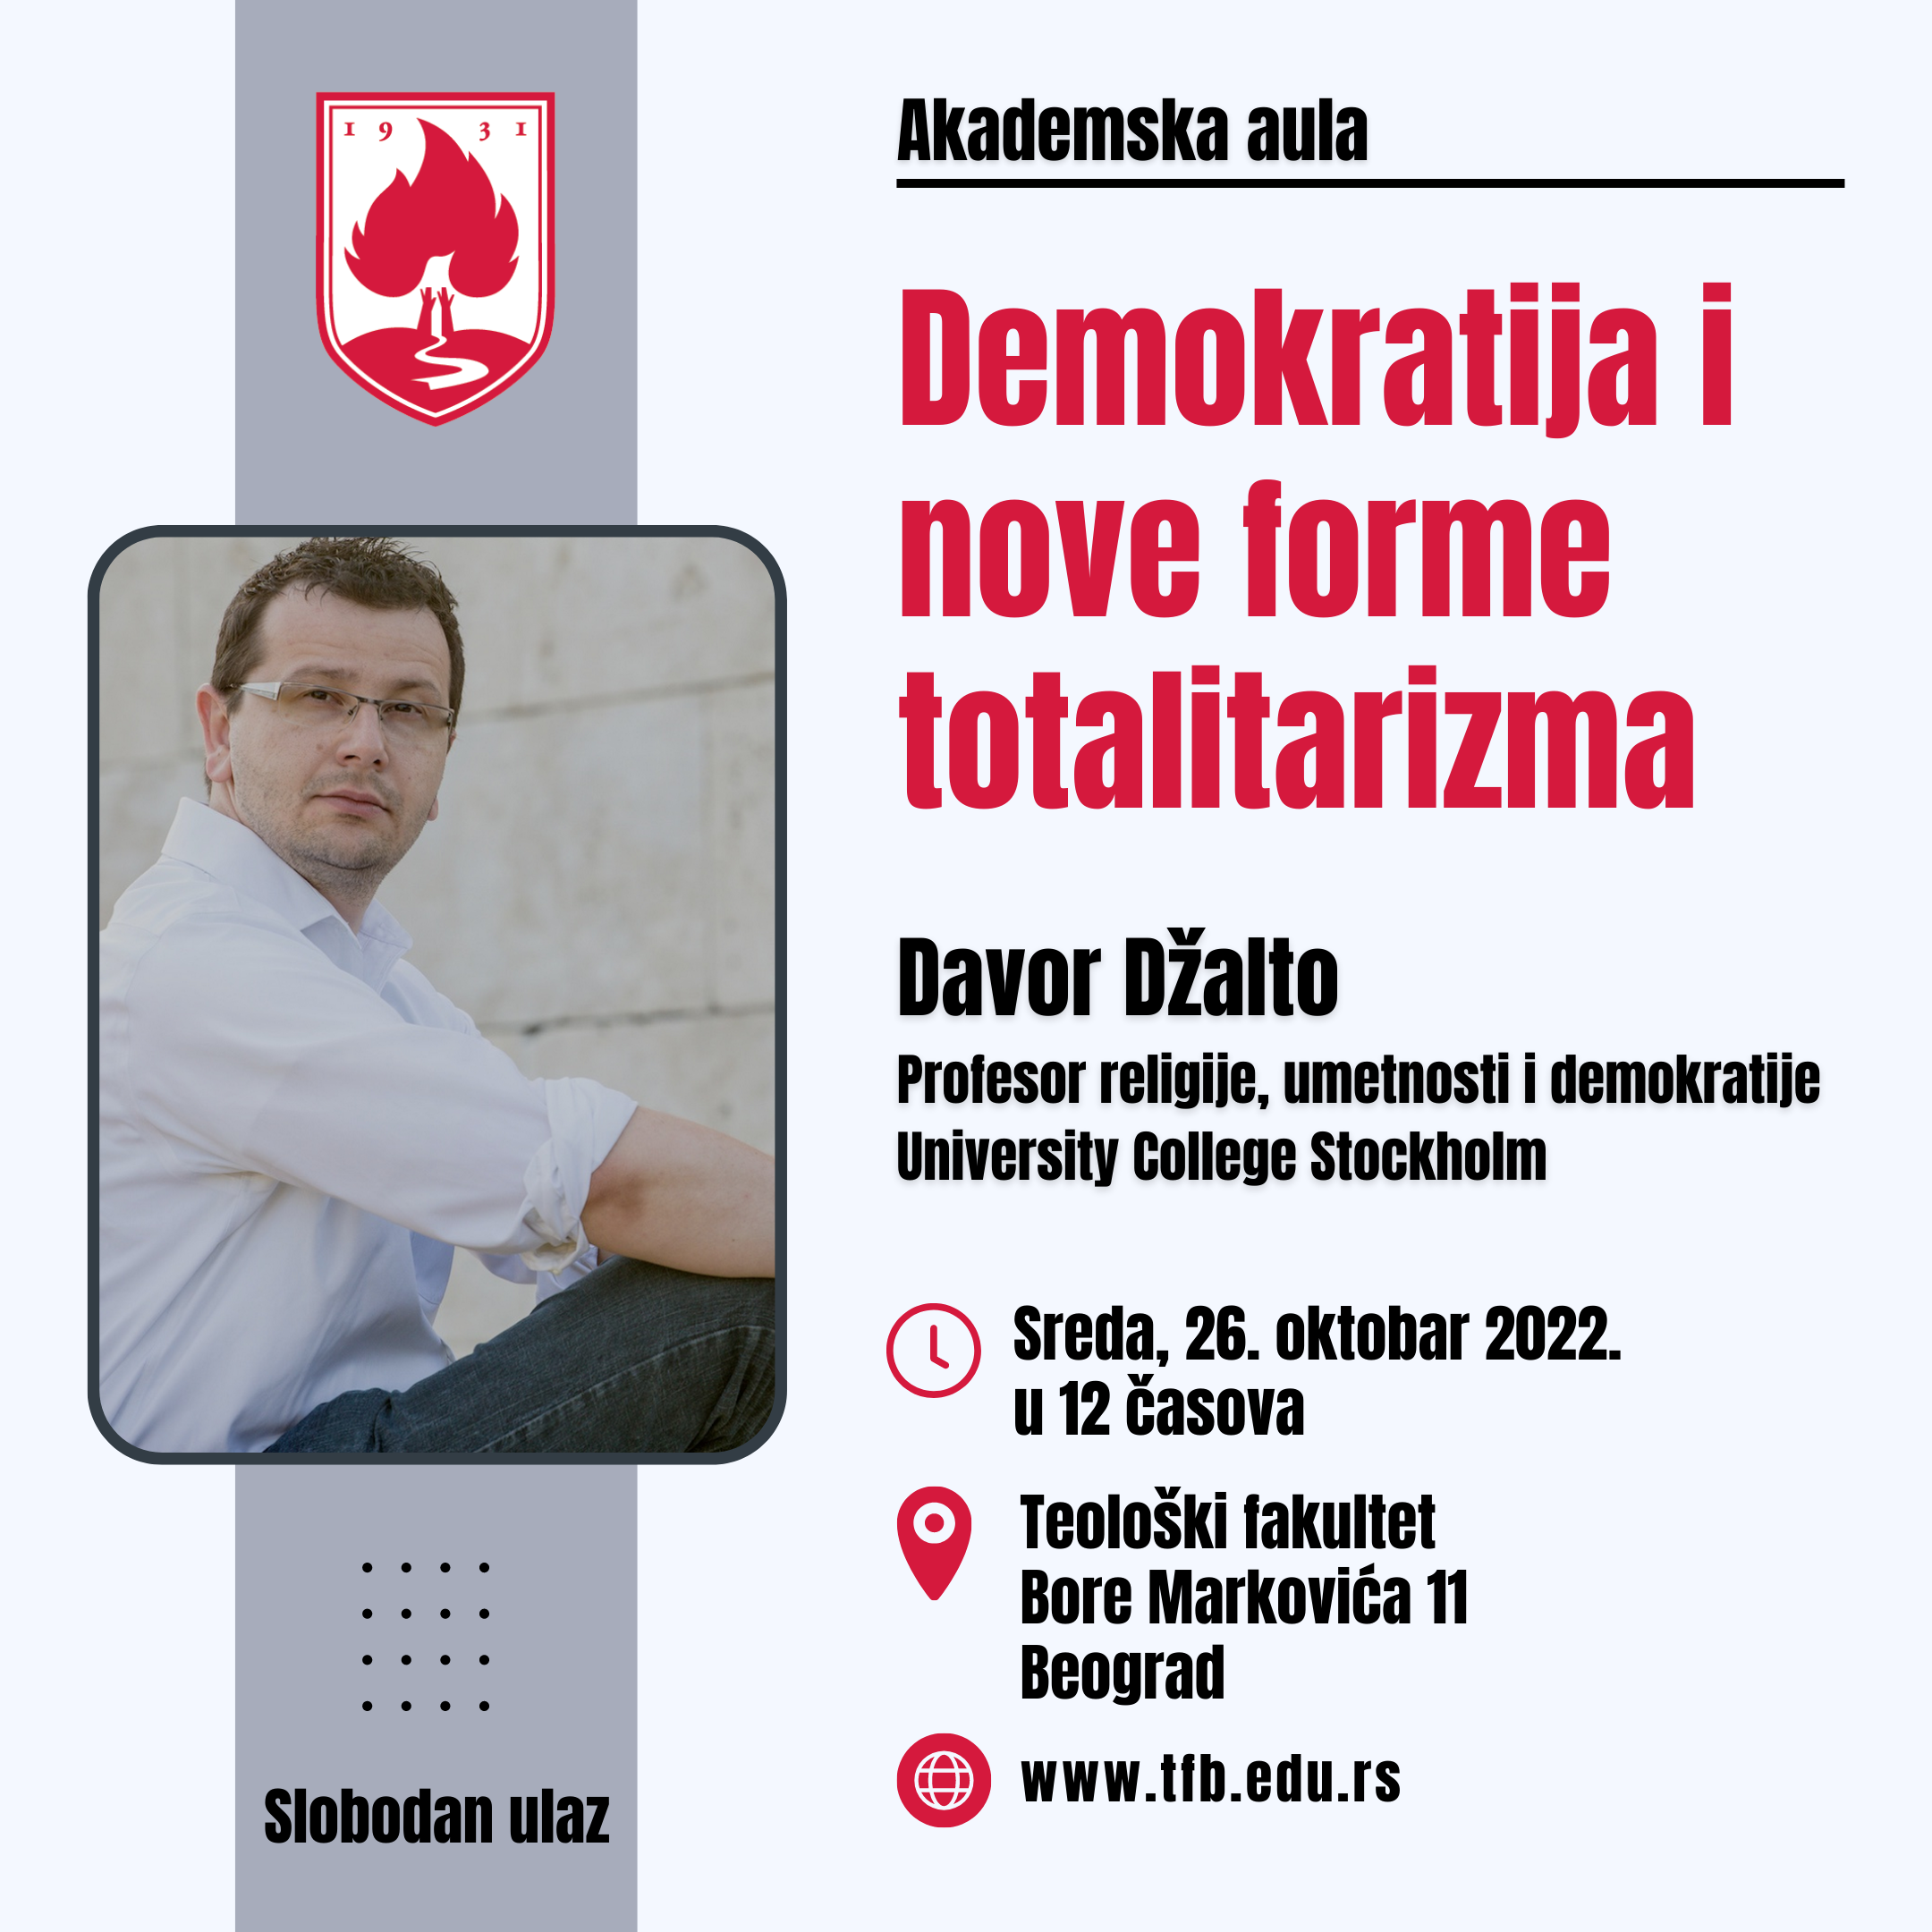 Davor Dzalto (2)